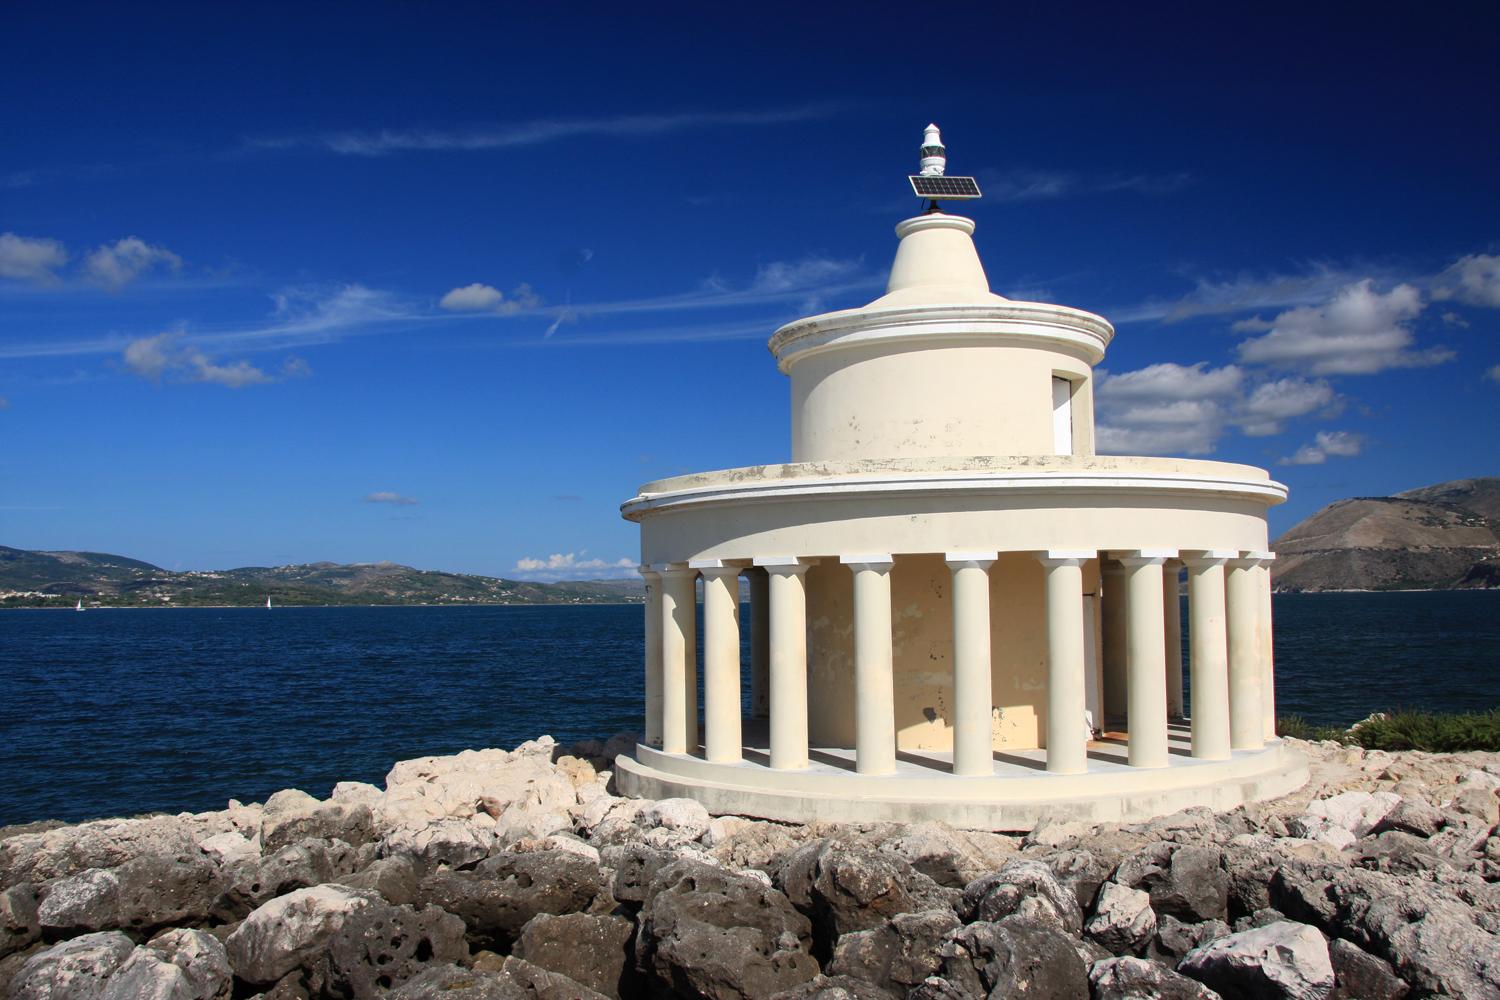 Der Leuchtturm Ághii Theodóri in der Bucht von Argostóli ist eines der Wahrzeichen der Insel (Foto: Sabine Becht)